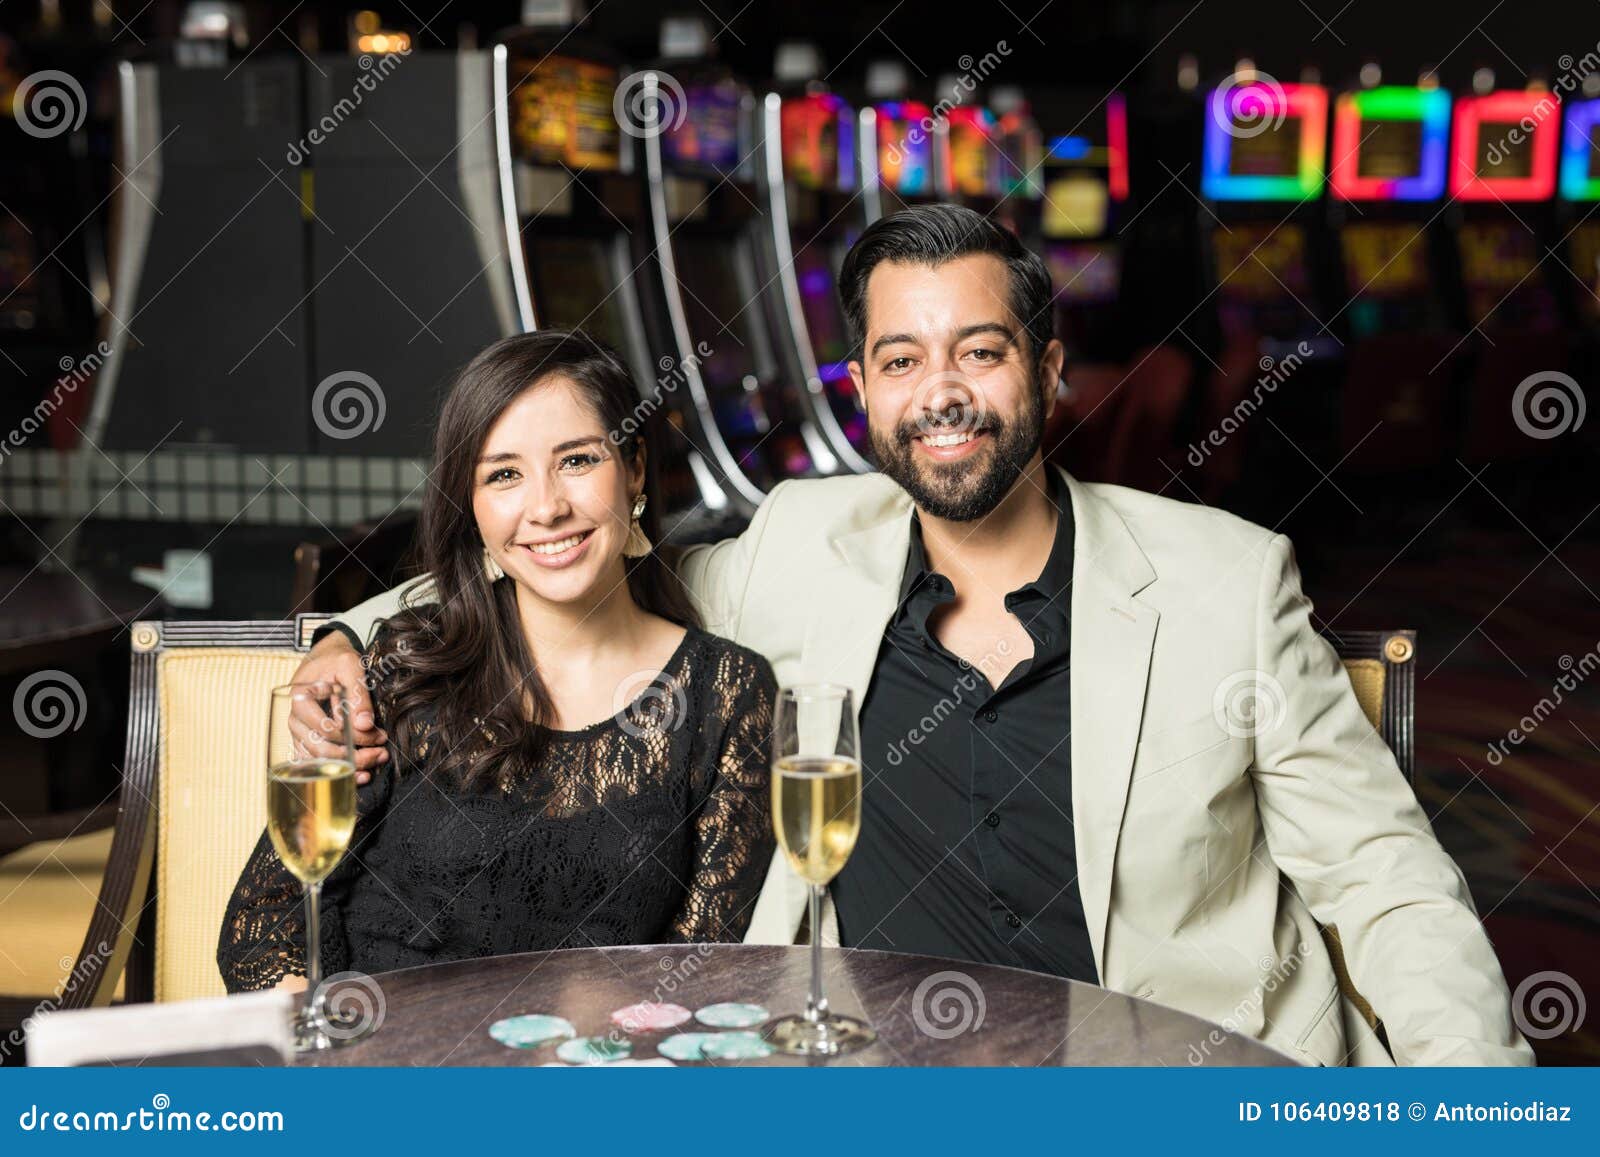 casino dating)